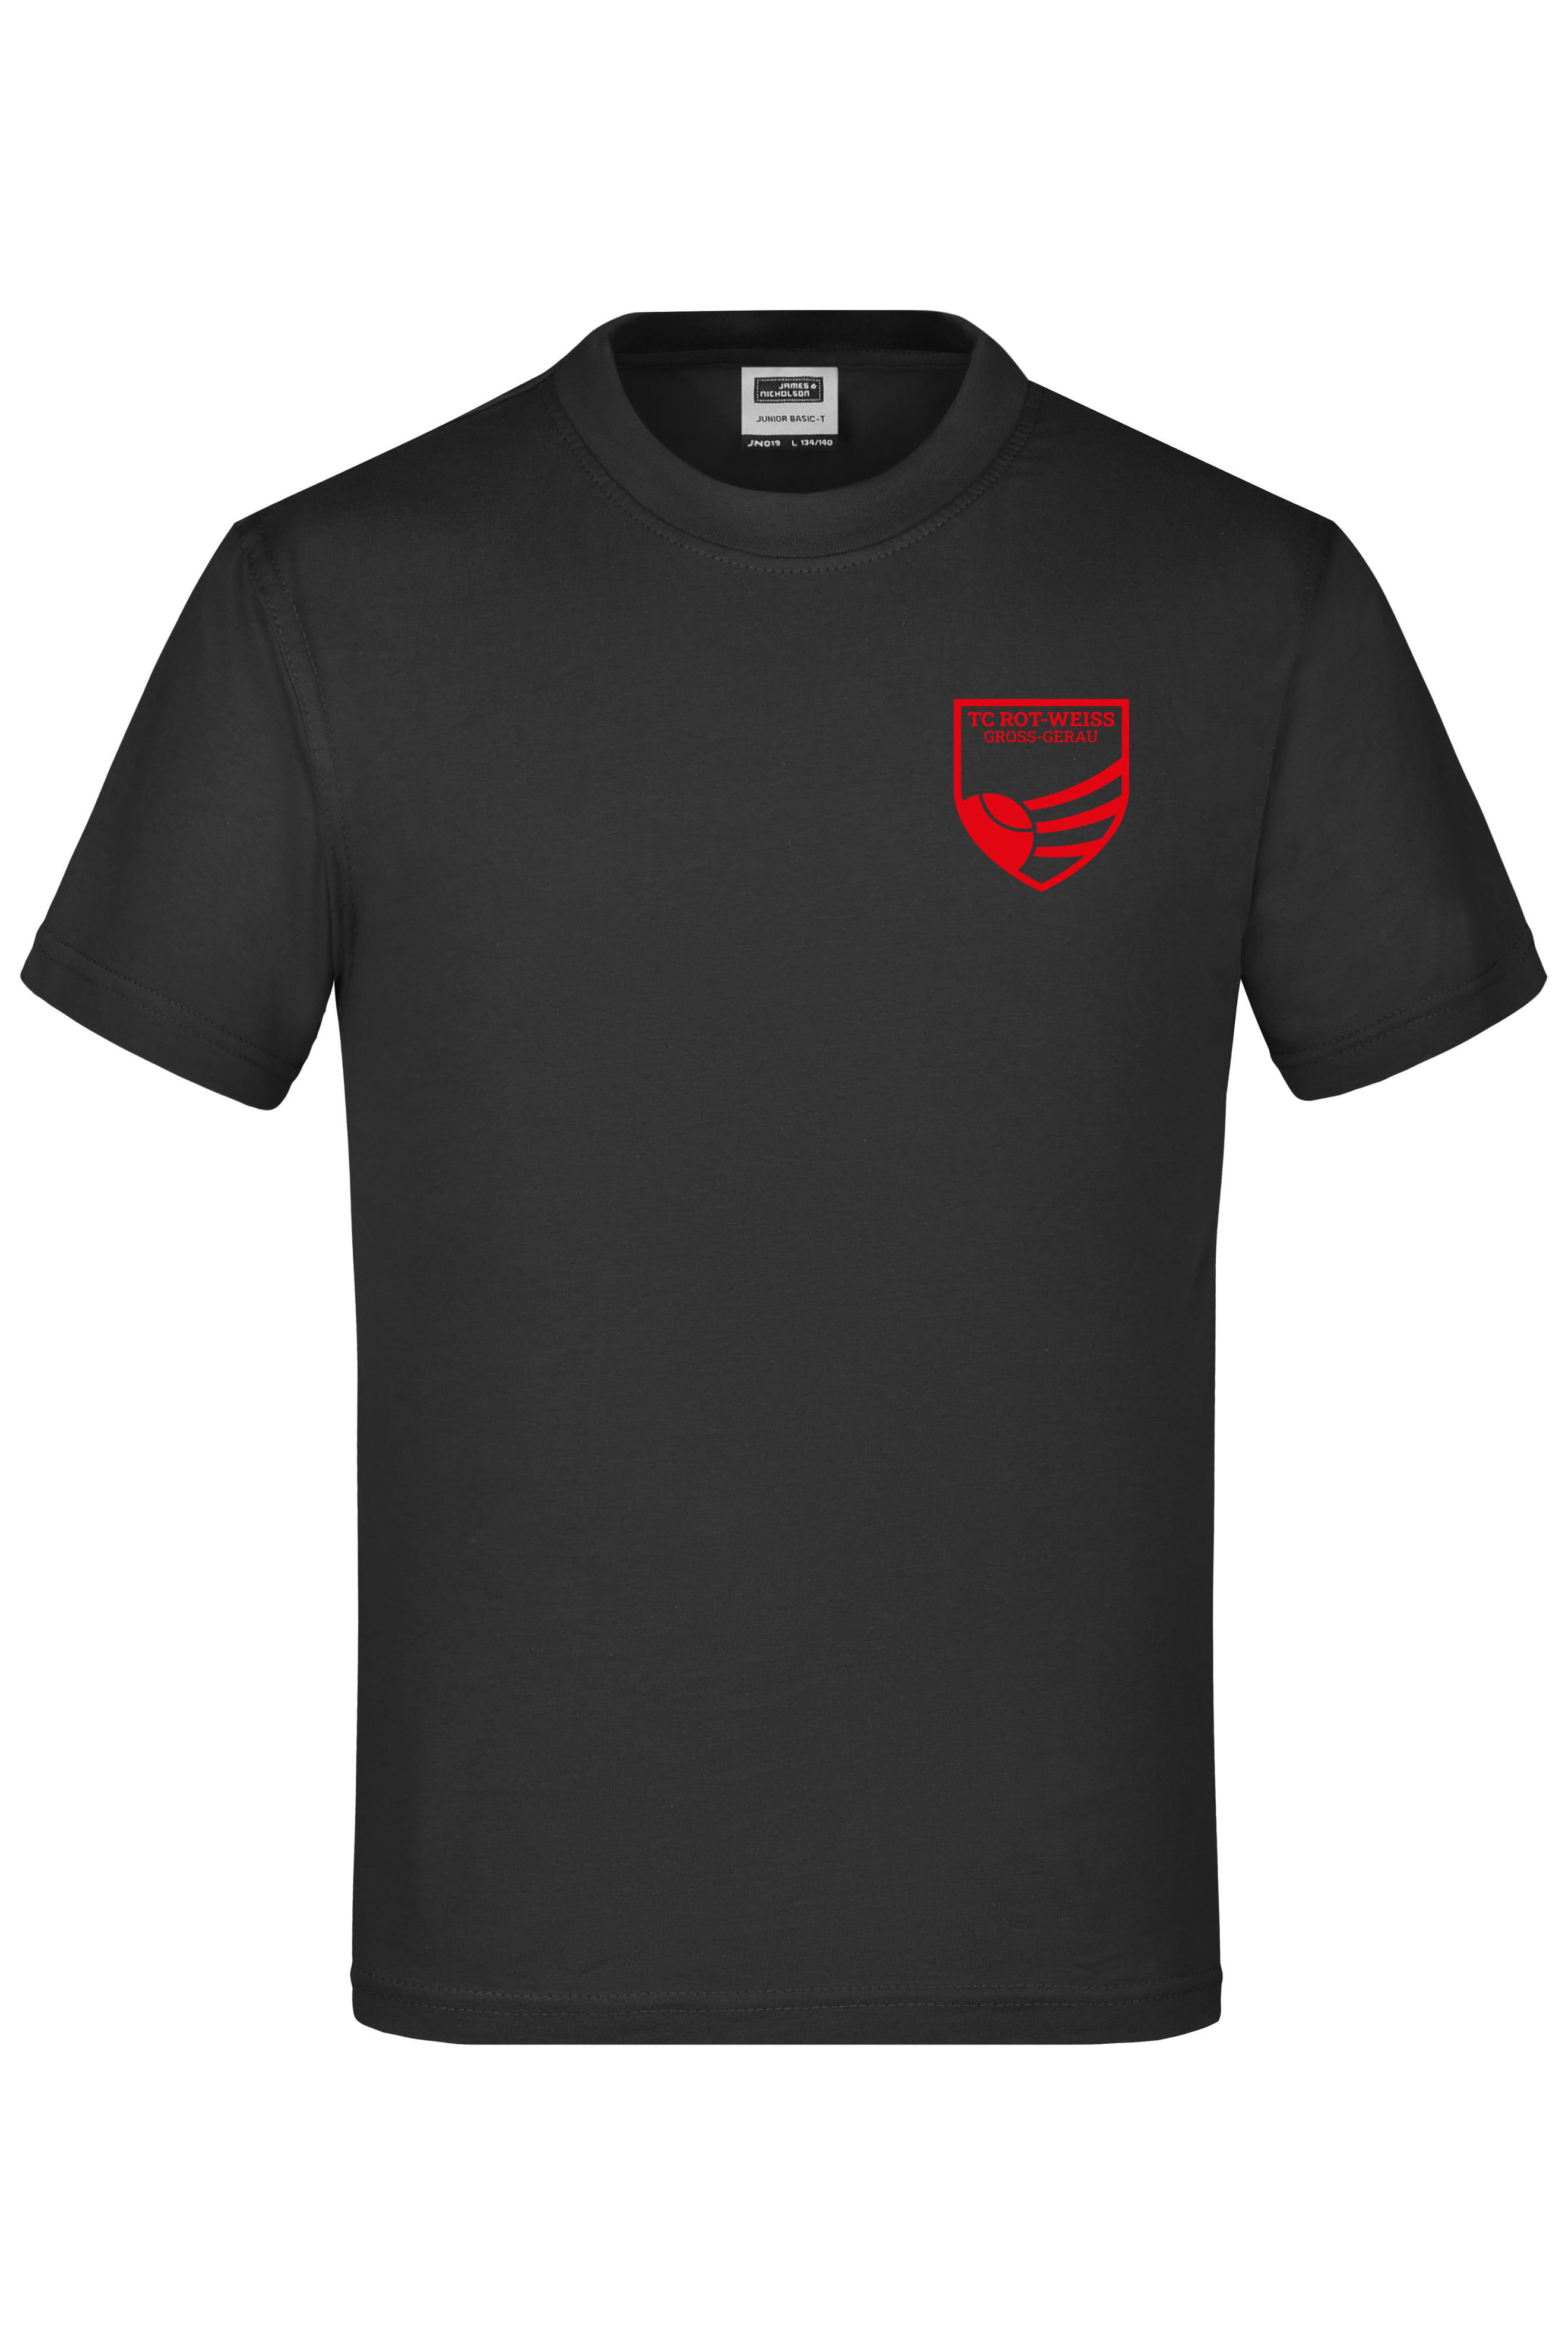 TC Rot-Weiss - Vorteil Dein Name - Kinder T-Shirt schwarz